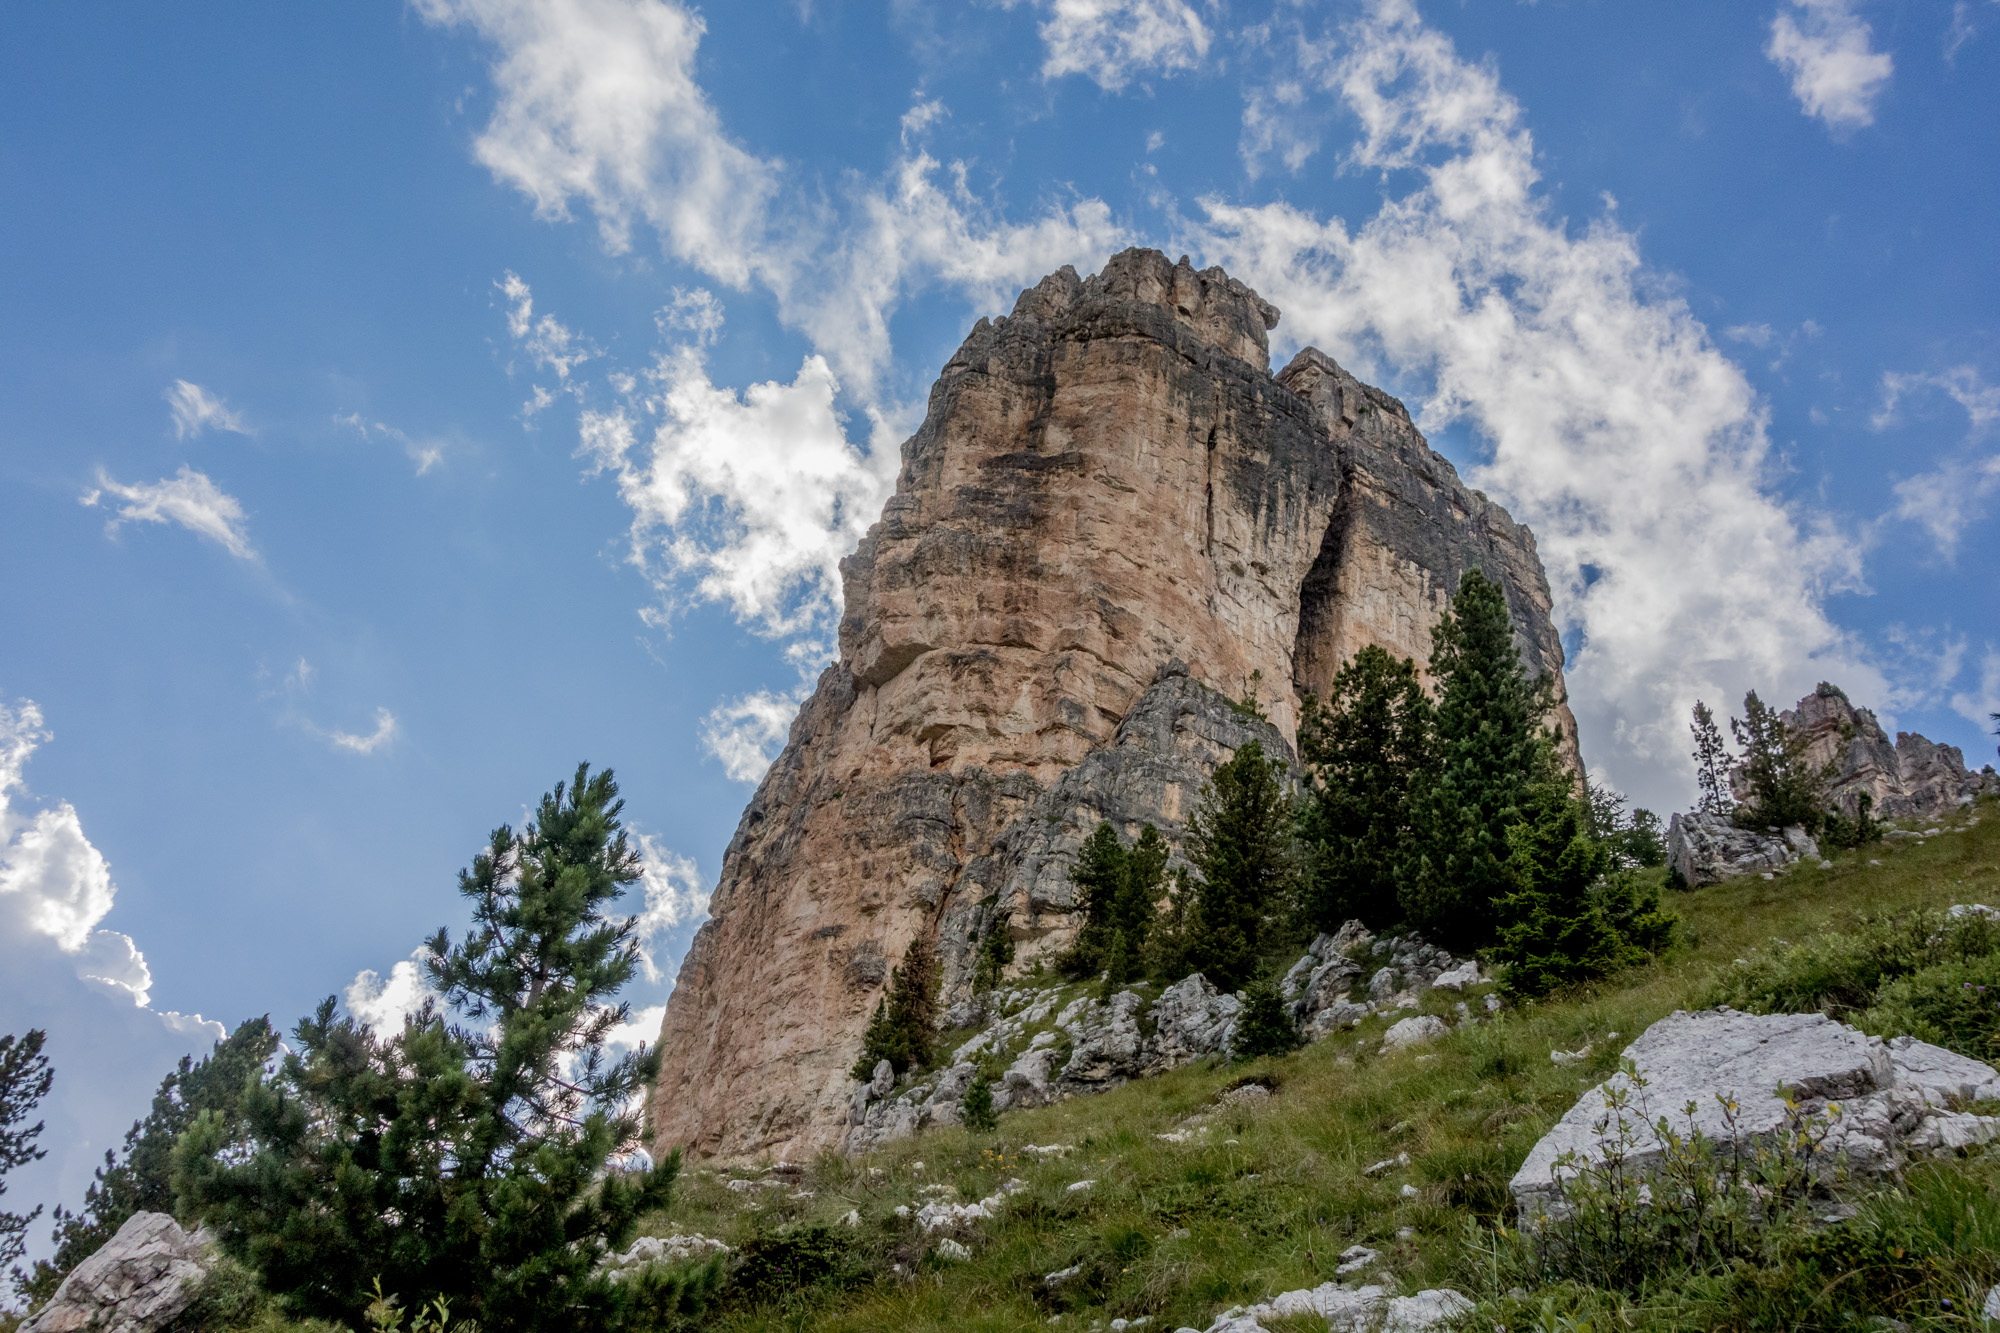 alpine summer rock climbing on cinque torri in the dolomites